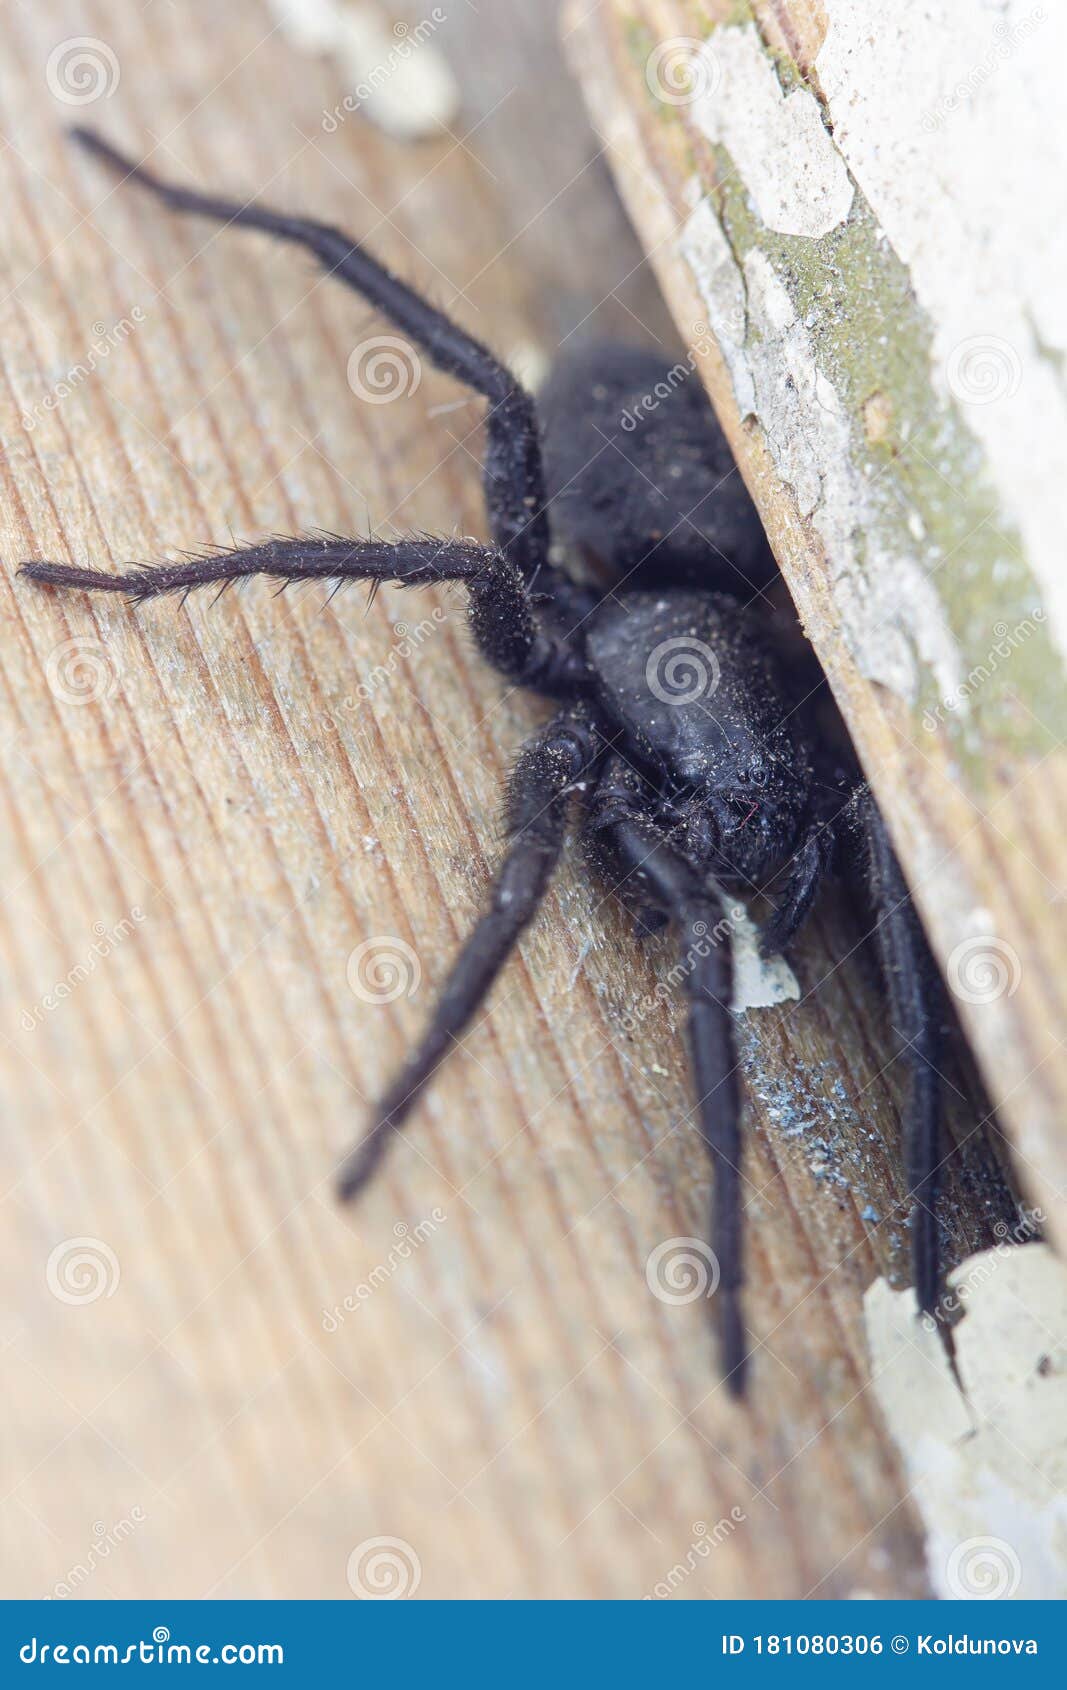 Виды домашних пауков, в том числе черные и серые пауки